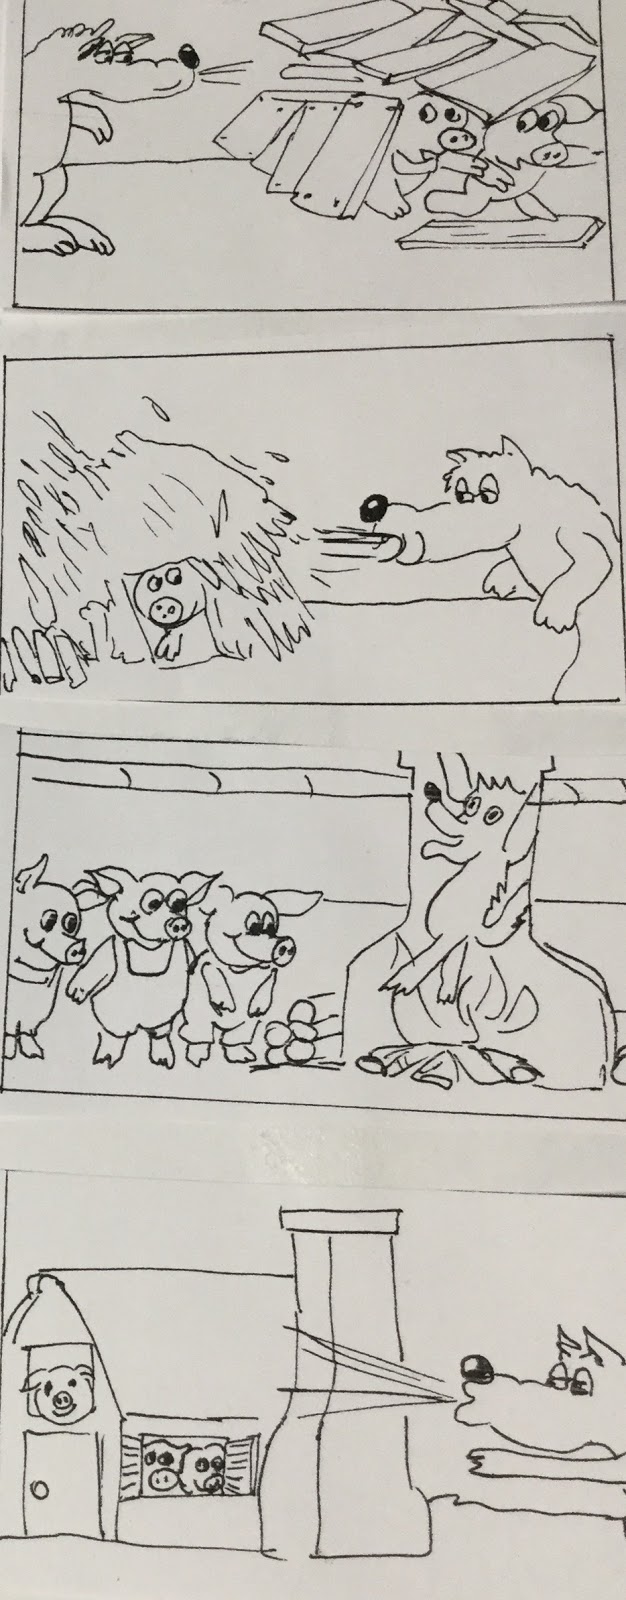 I Tre Porcellini 😊 storie per bambini - Cartoni Animati - Fiabe e Favole  per Bambini 